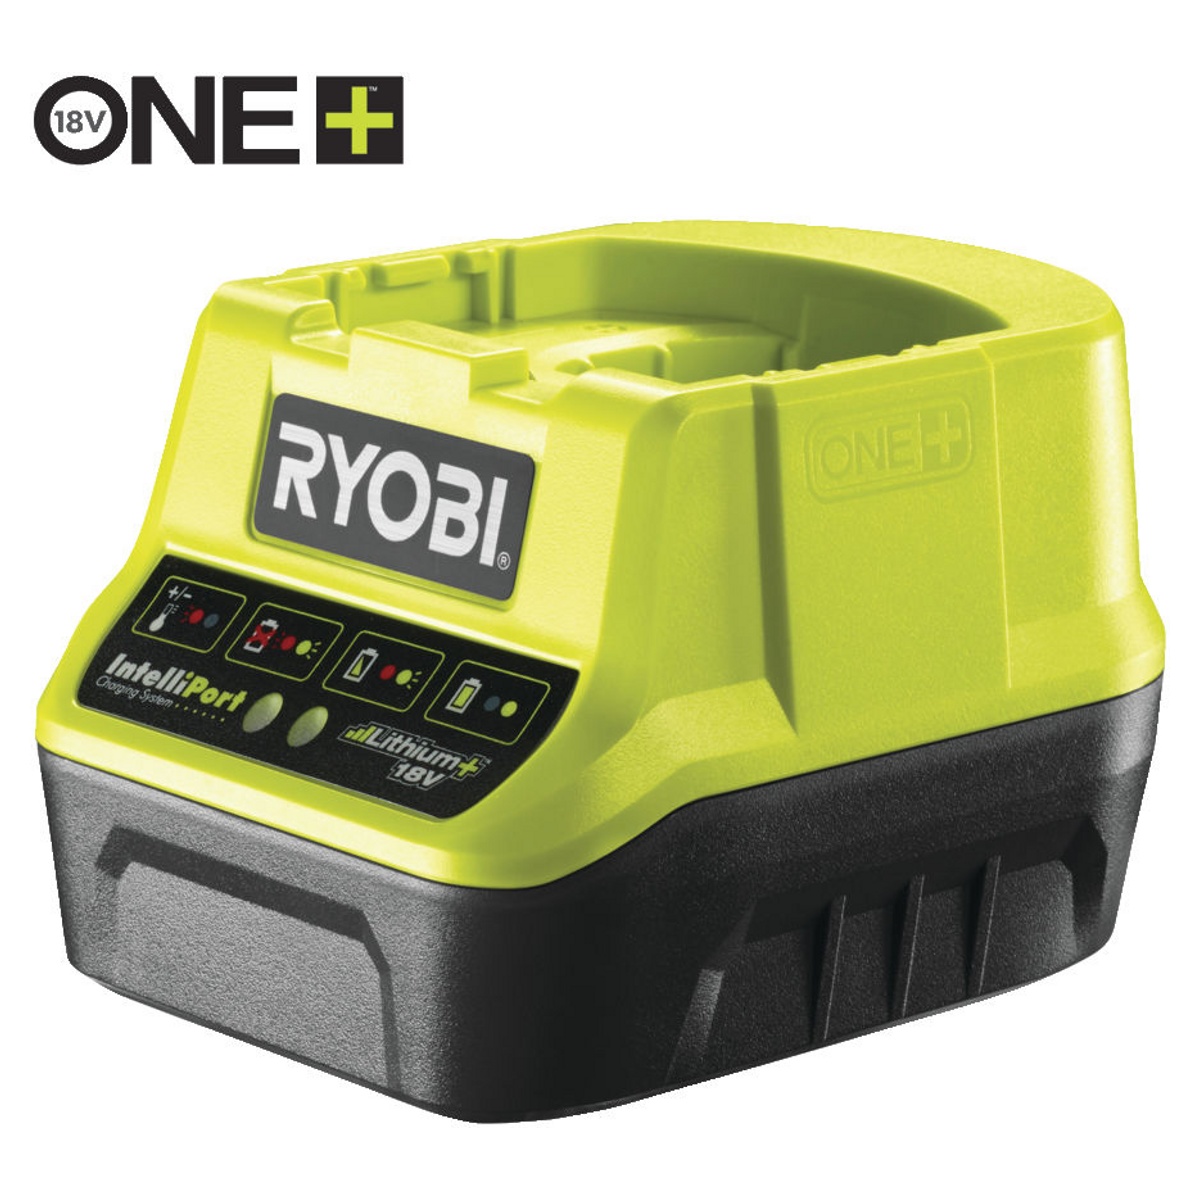 ONE + / Зарядное устройство компактное RYOBI RC18120